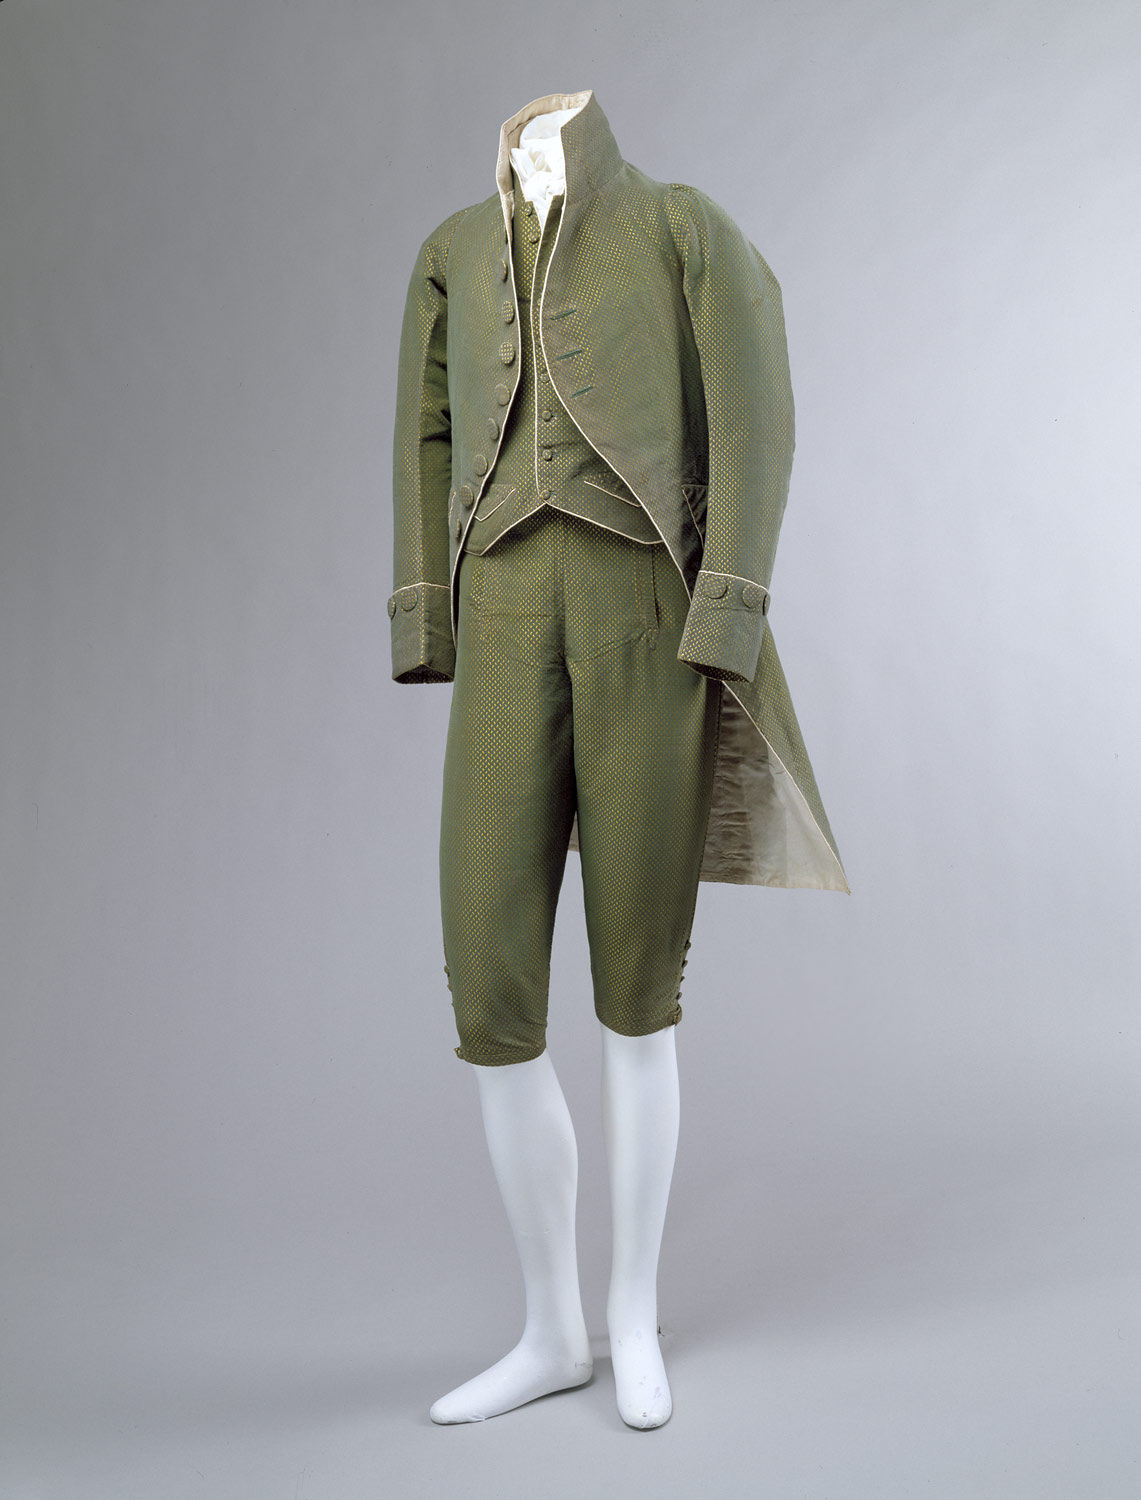 19世纪法国男性服饰图片